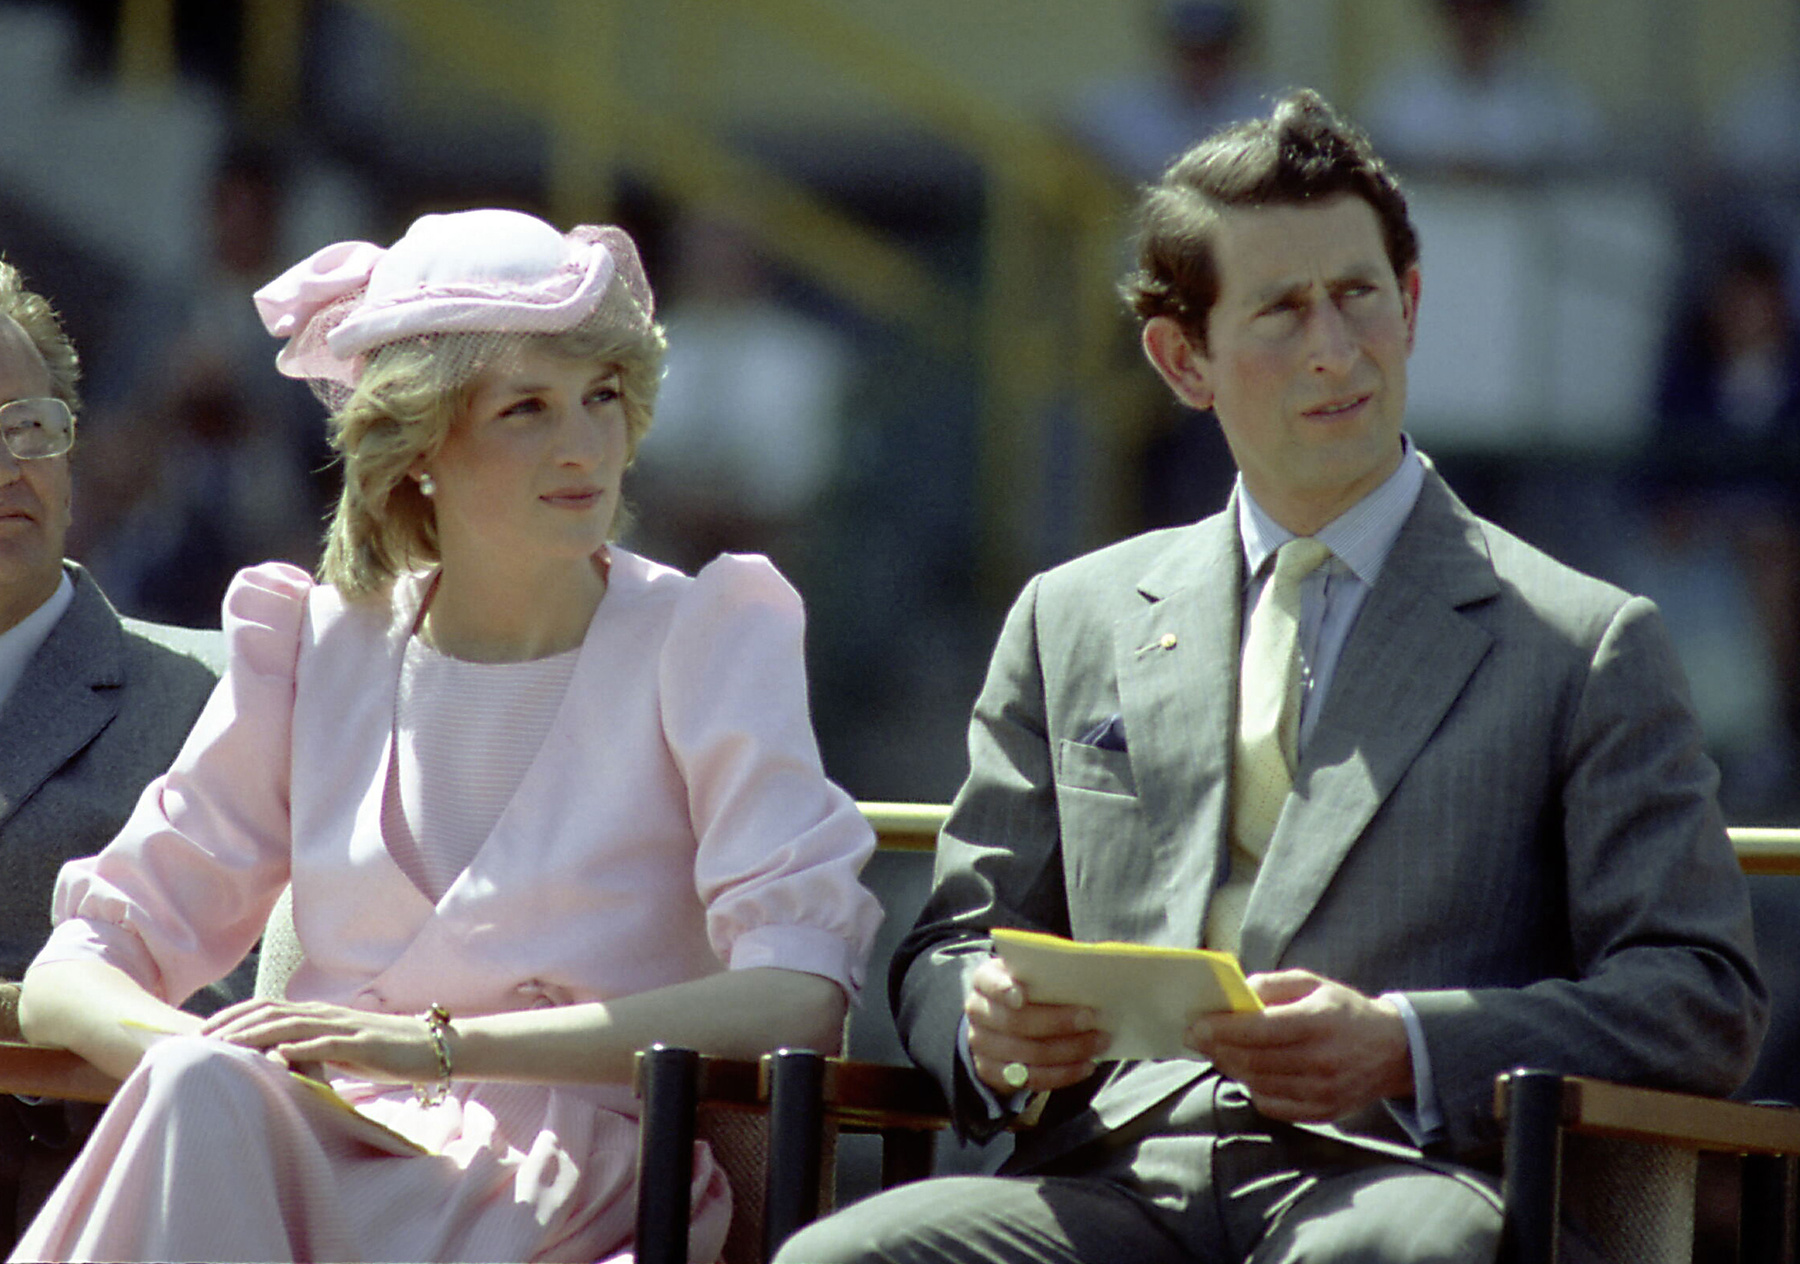 Katalin kenti hercegné (II. Erzsébet brit királynő unokatestvére) is nagy rajongója a gyöngyfülbevalónak és a rózsaszínnek.